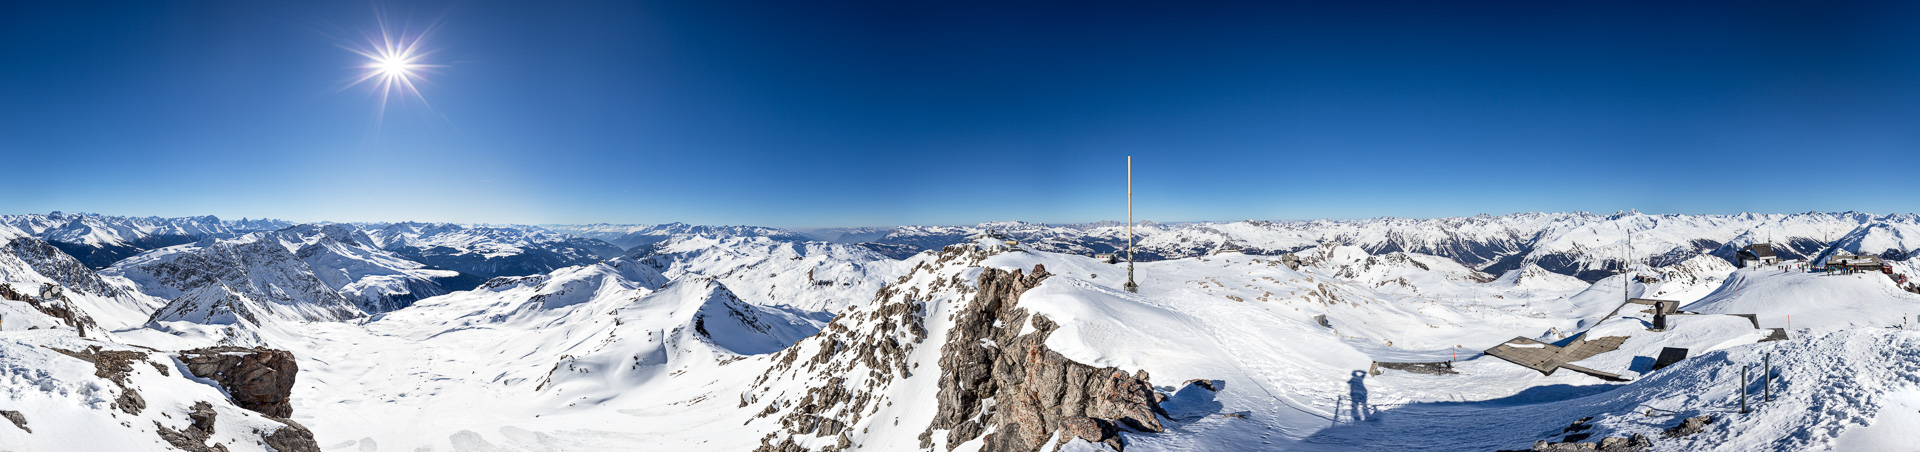 Das fast unmögliche Panorama: Ein total verbauter Gipfel! Dennoch eine phantastische Aussicht und herrliche Fernsicht.